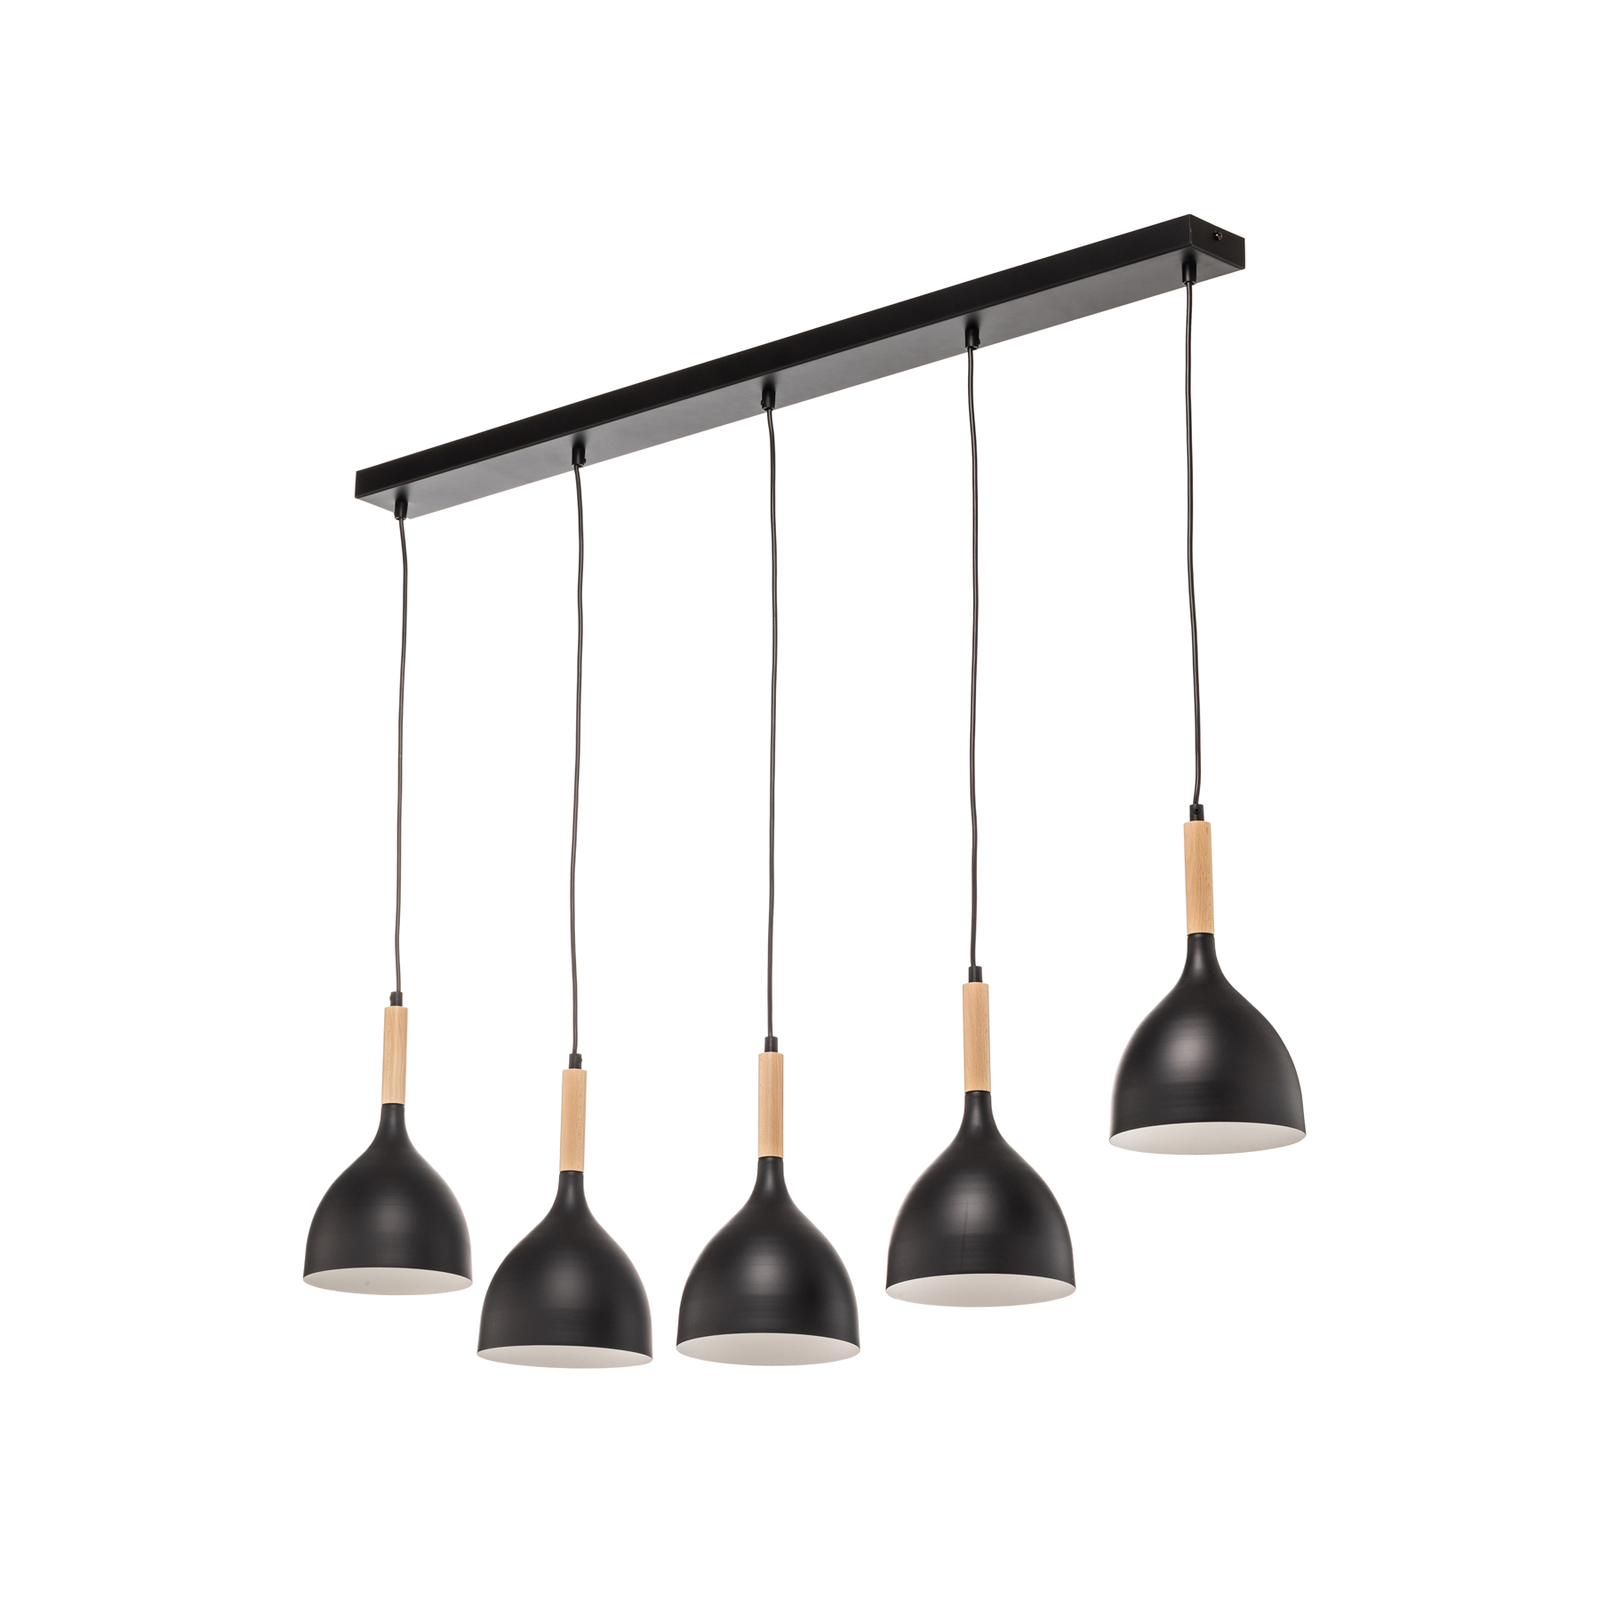 Hanglamp Nanu met hout lang 5-lamps zwart